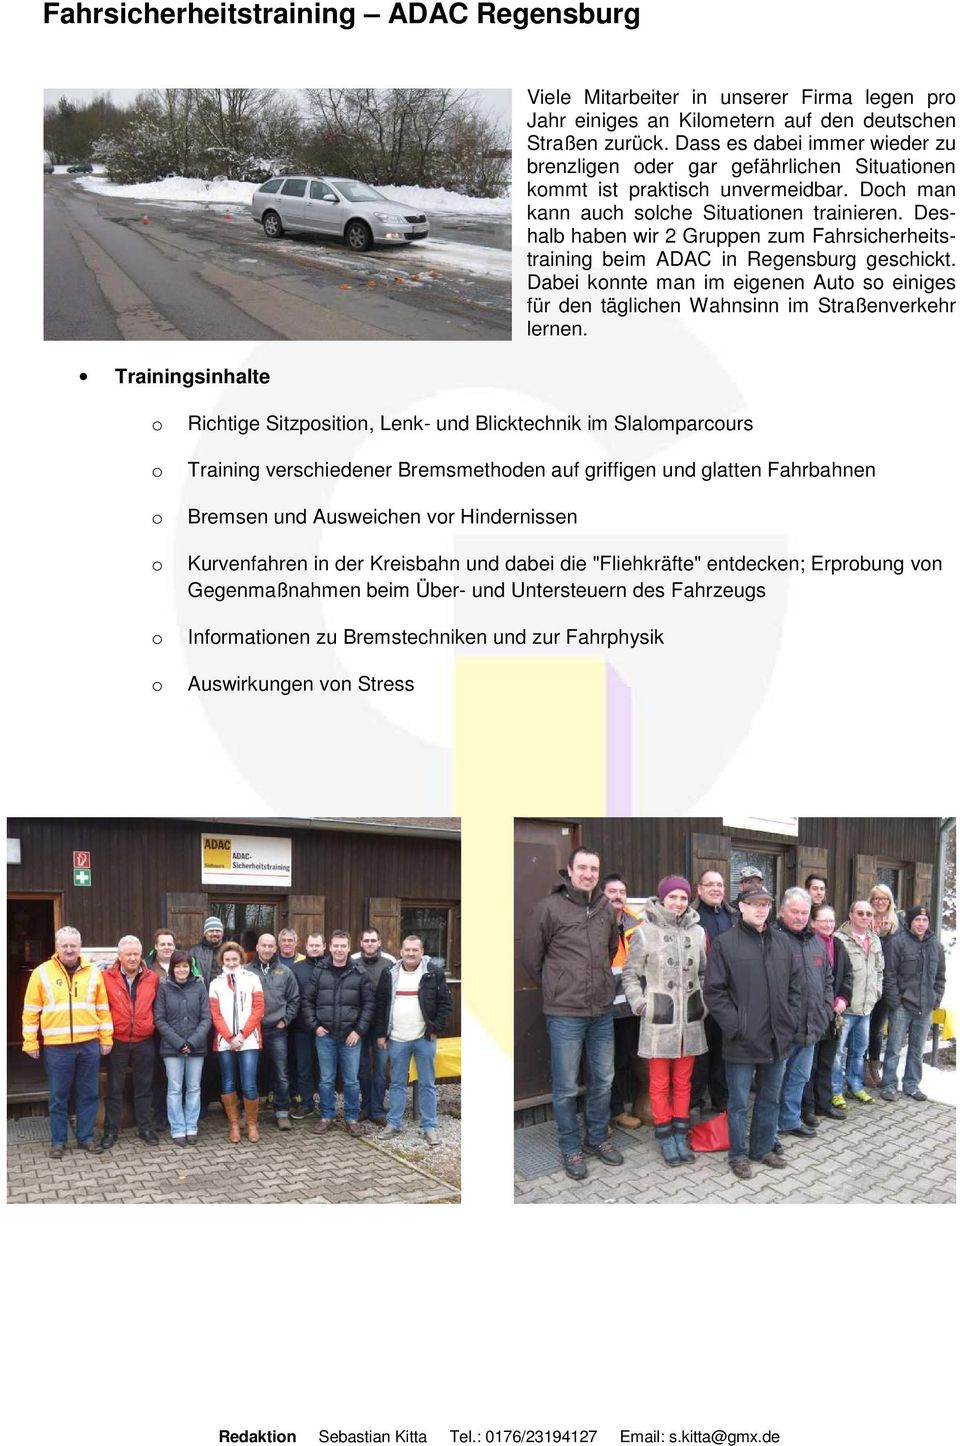 Deshalb haben wir 2 Gruppen zum Fahrsicherheitstraining beim ADAC in Regensburg geschickt. Dabei knnte man im eigenen Aut s einiges für den täglichen Wahnsinn im Straßenverkehr lernen.